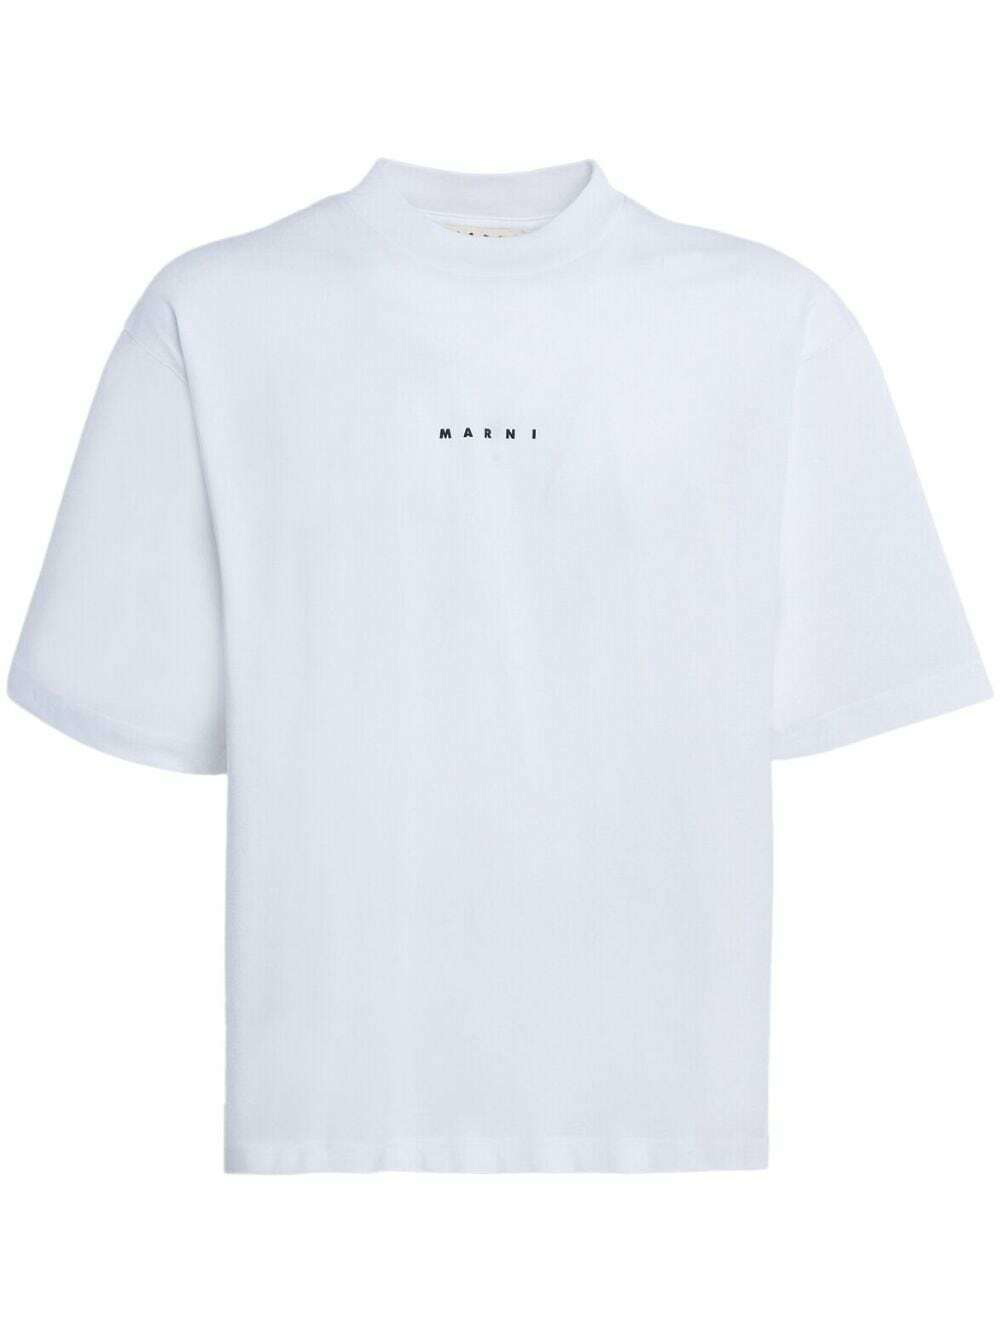 MARNI - Logo Cotton T-shirt Marni